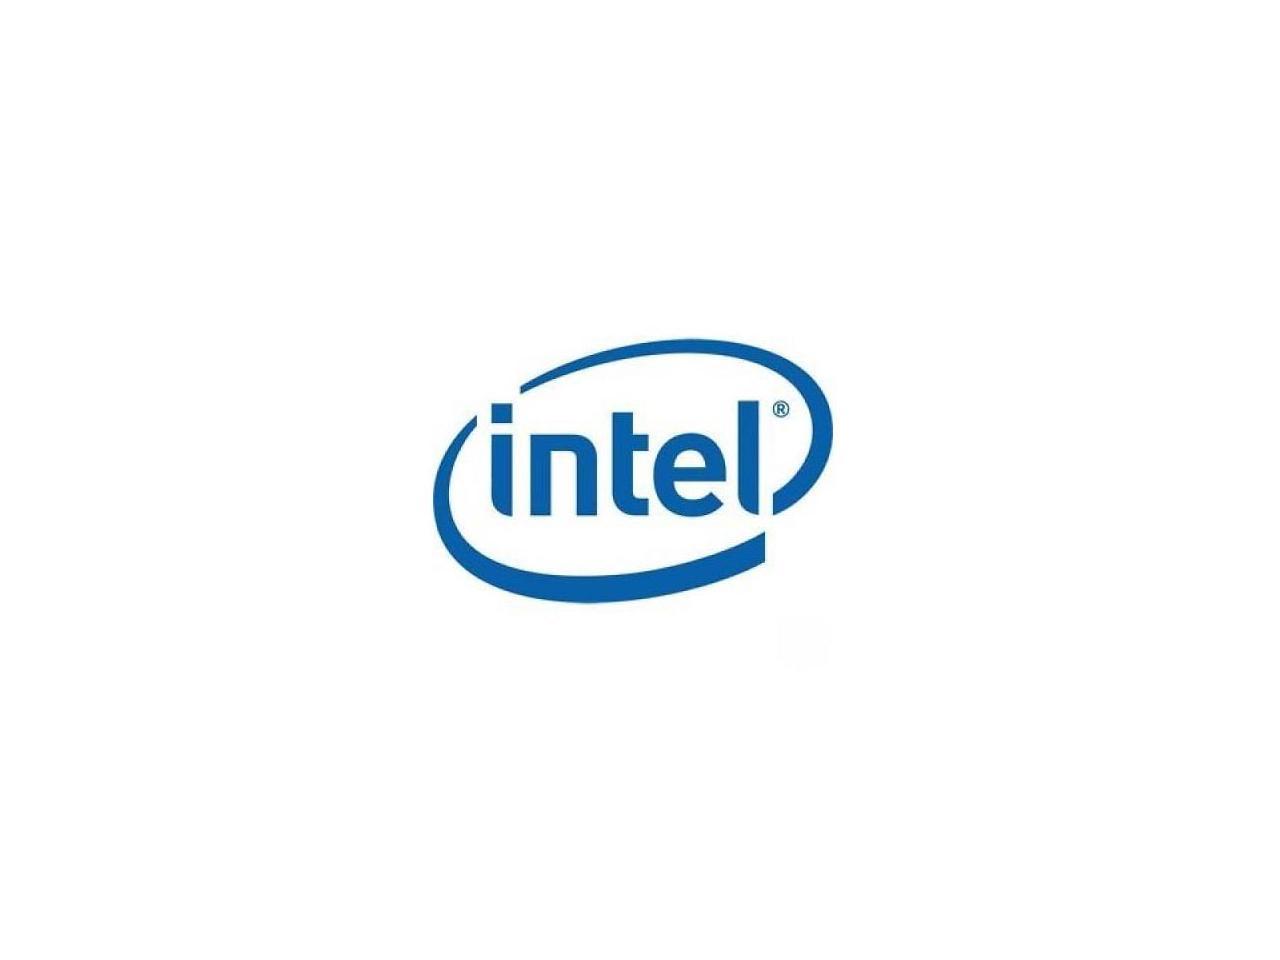 Intel CC VROCSTANMOD Virtual RAID standard BD 5Module (VROCSTANMOD)